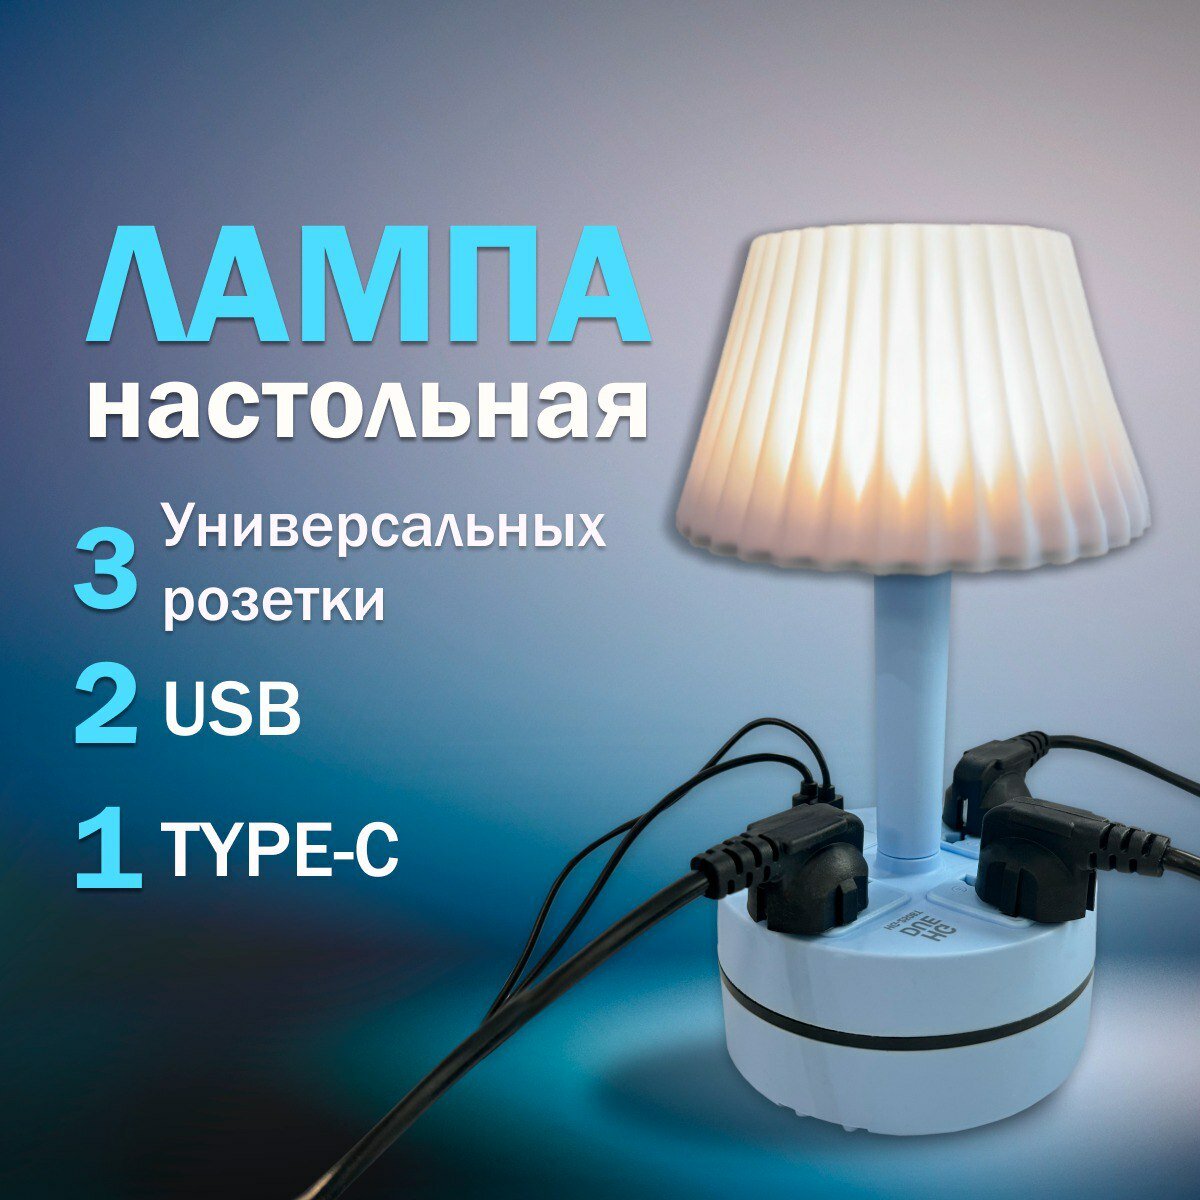 Лампа настольная "Прикроватная" с абажуром голубая, светильник с розетками USB и Type-C